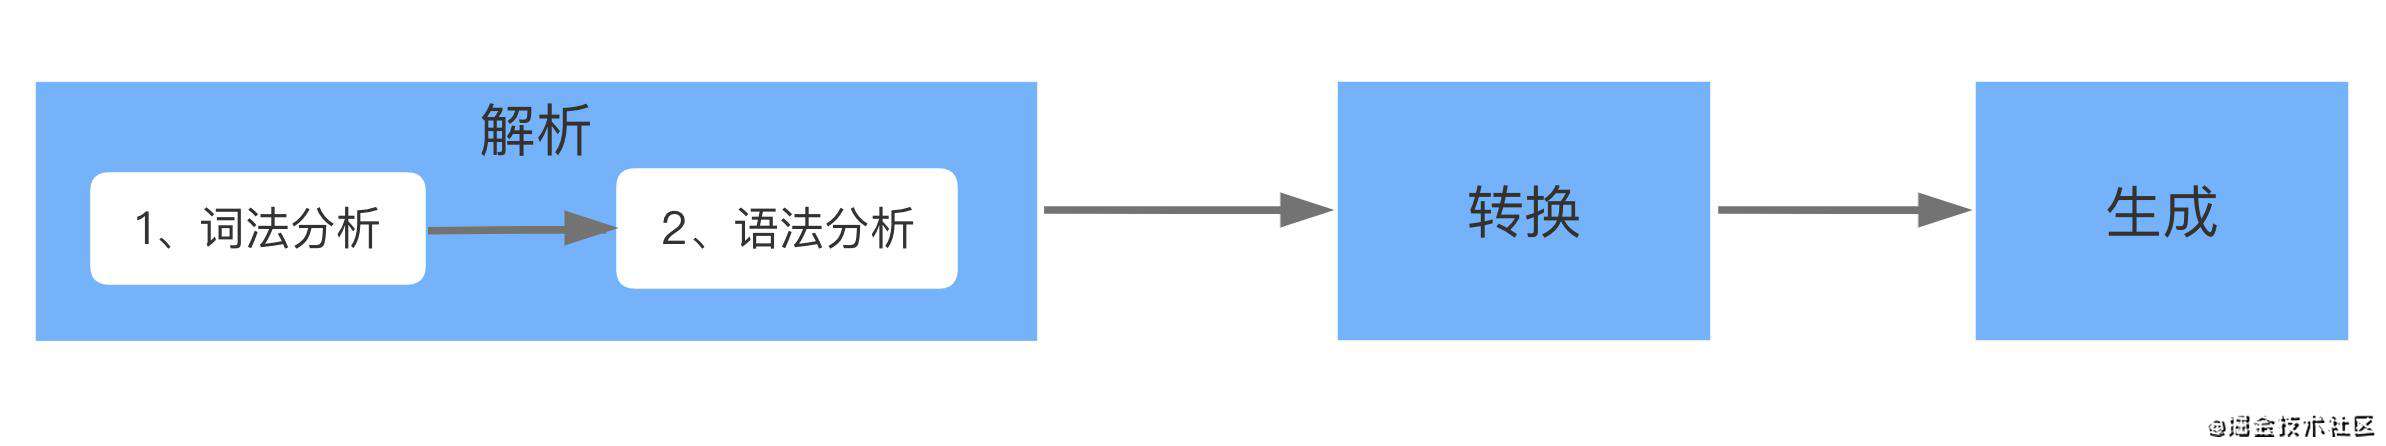 前端-编译原理 从babel学习抽象语法树